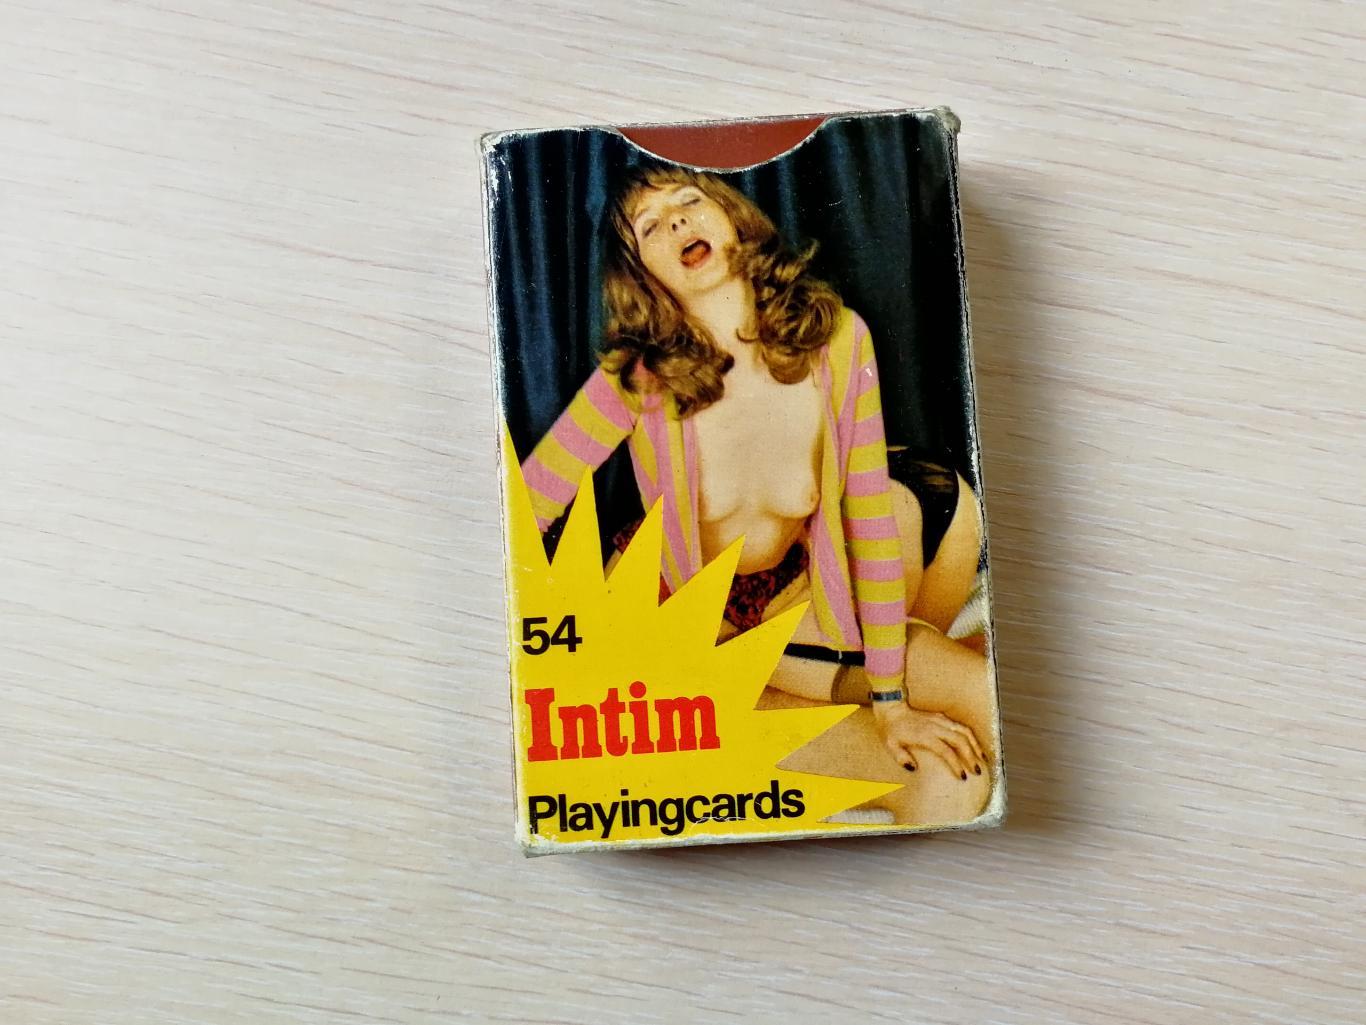 Игральные карты Intim, Швеция 1980-е, оригинал, 54 шт.